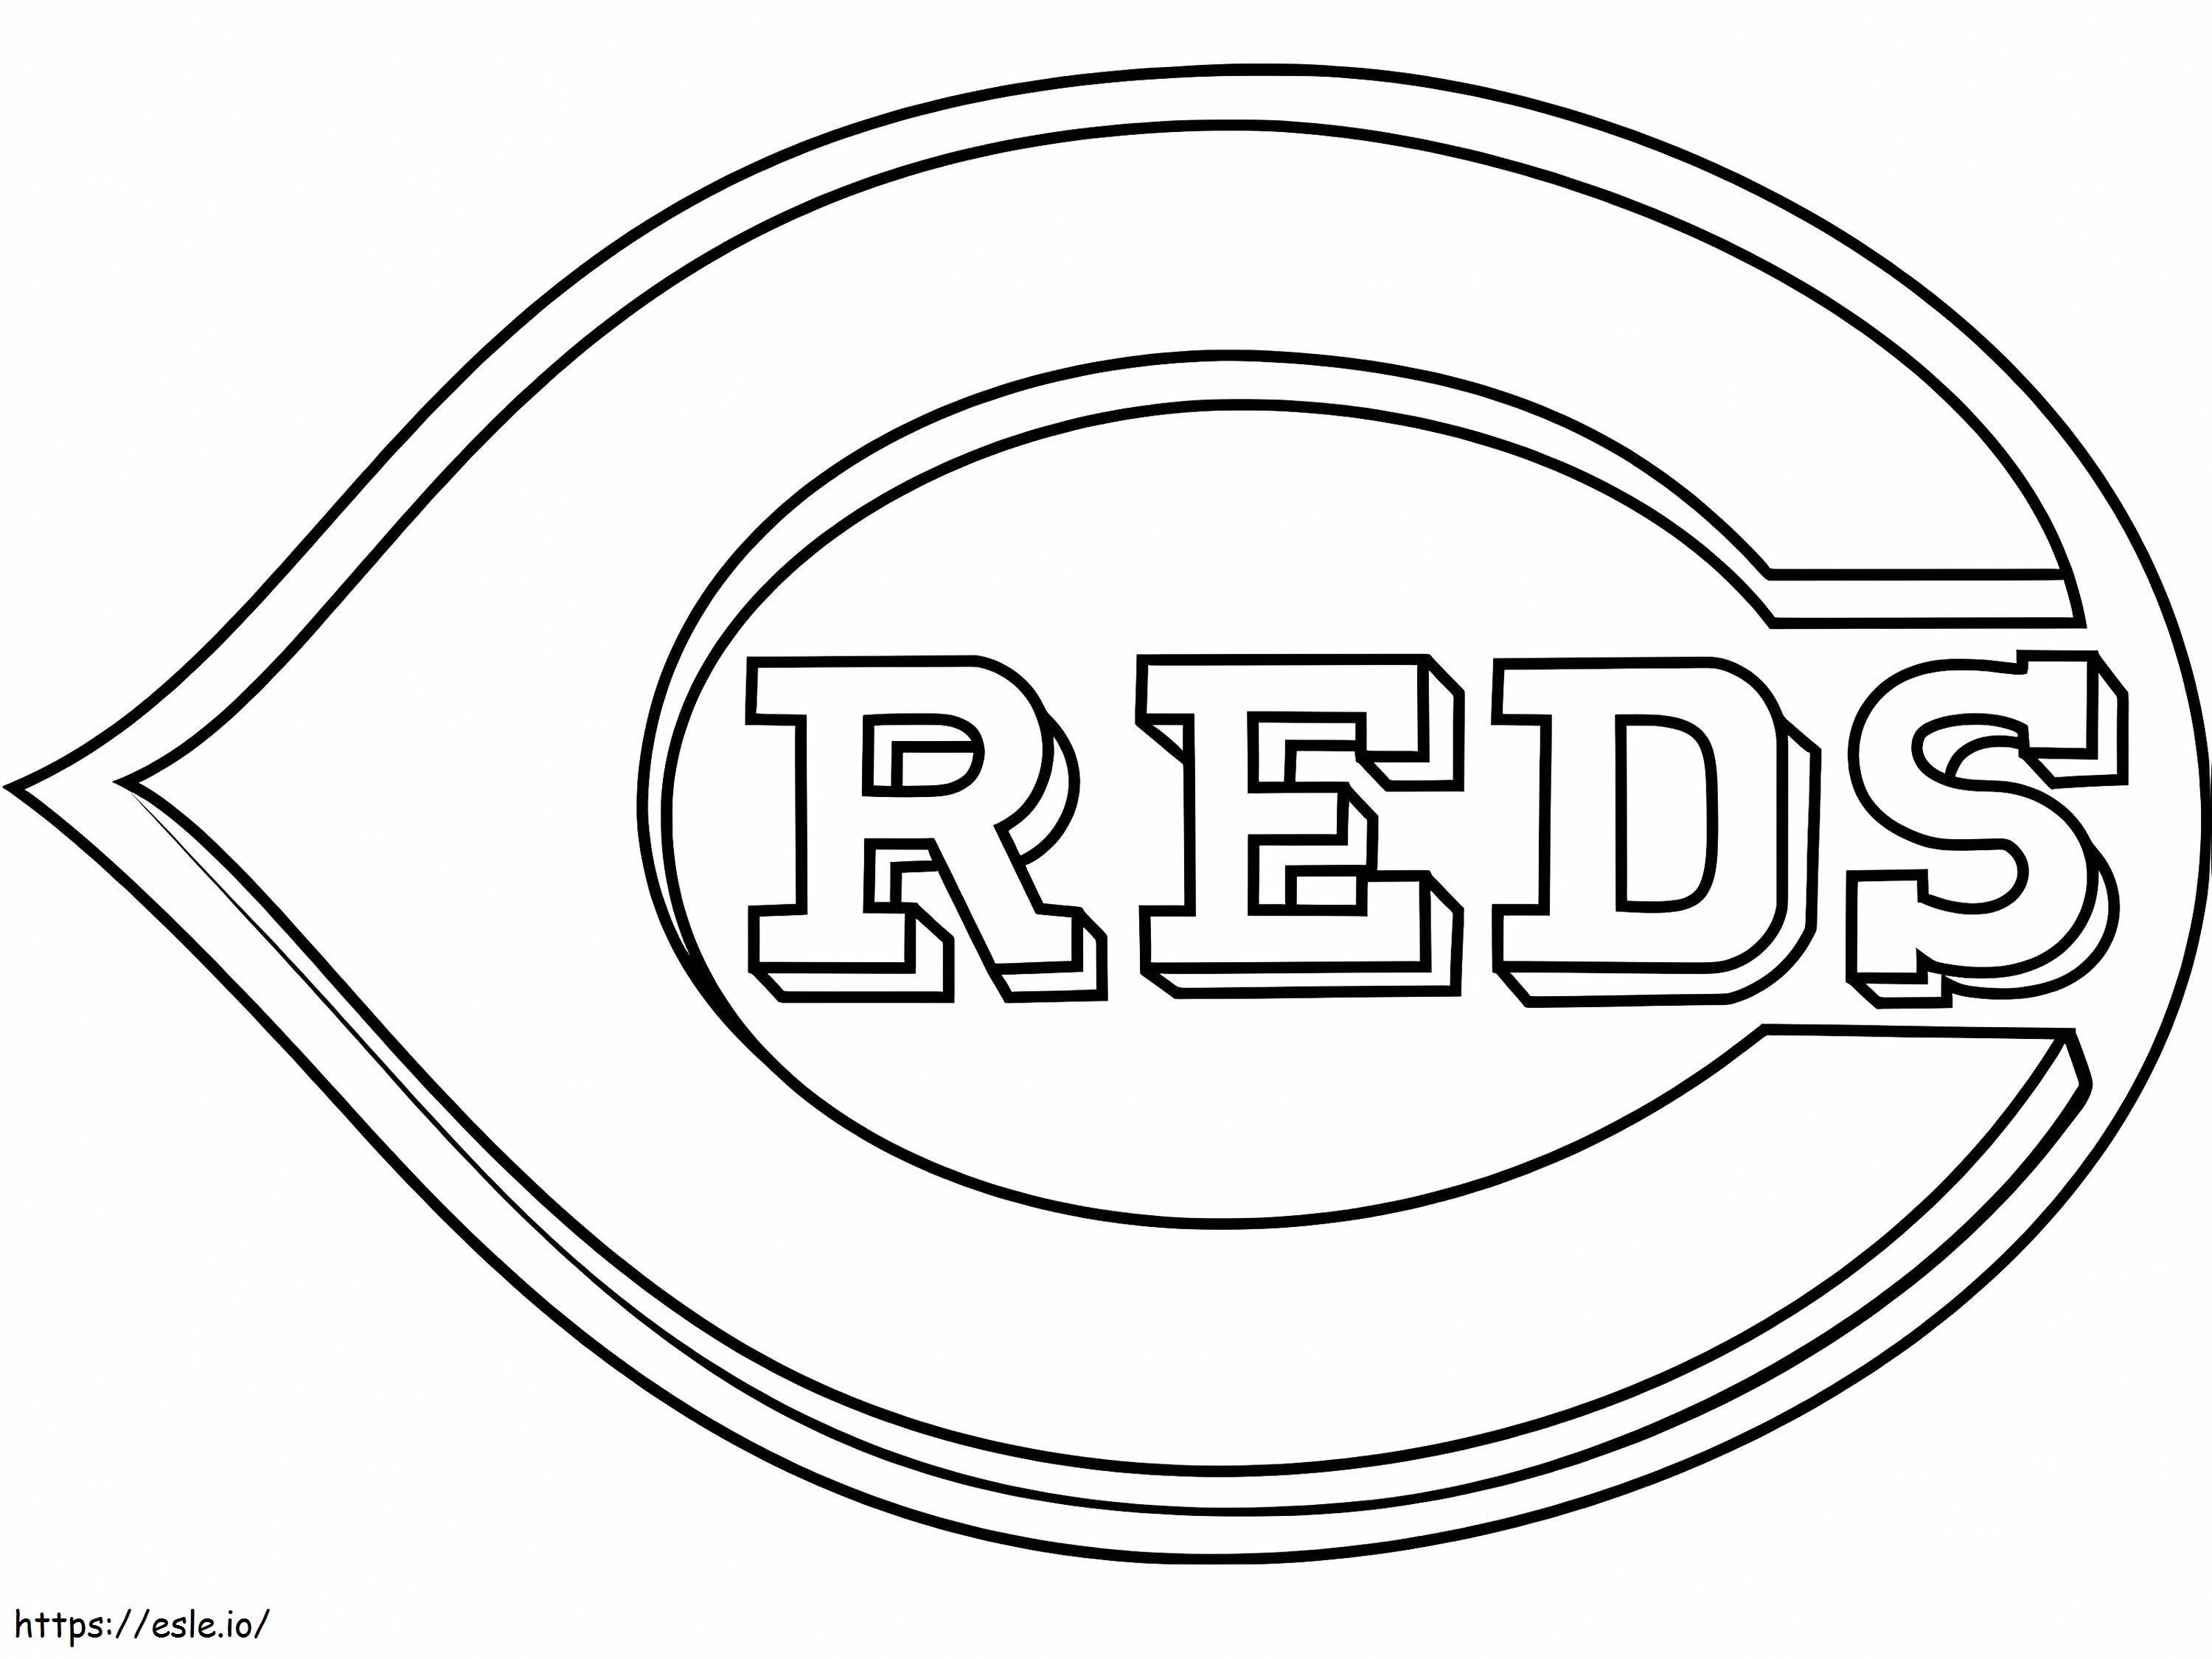 Cincinnati Reds logosu boyama